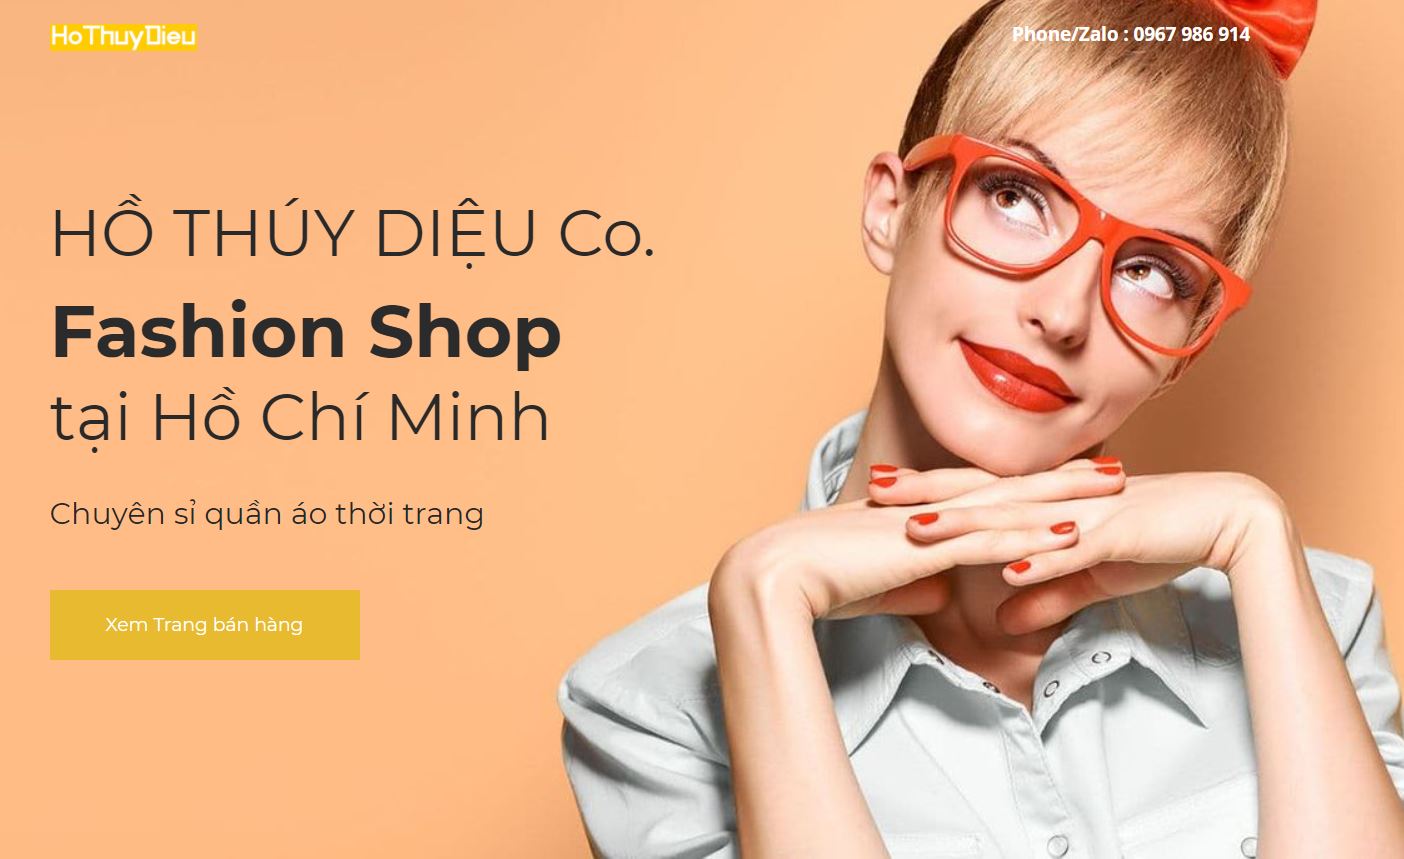 Hồ Thúy Diệu Co. Ltd. - Fashion Shop